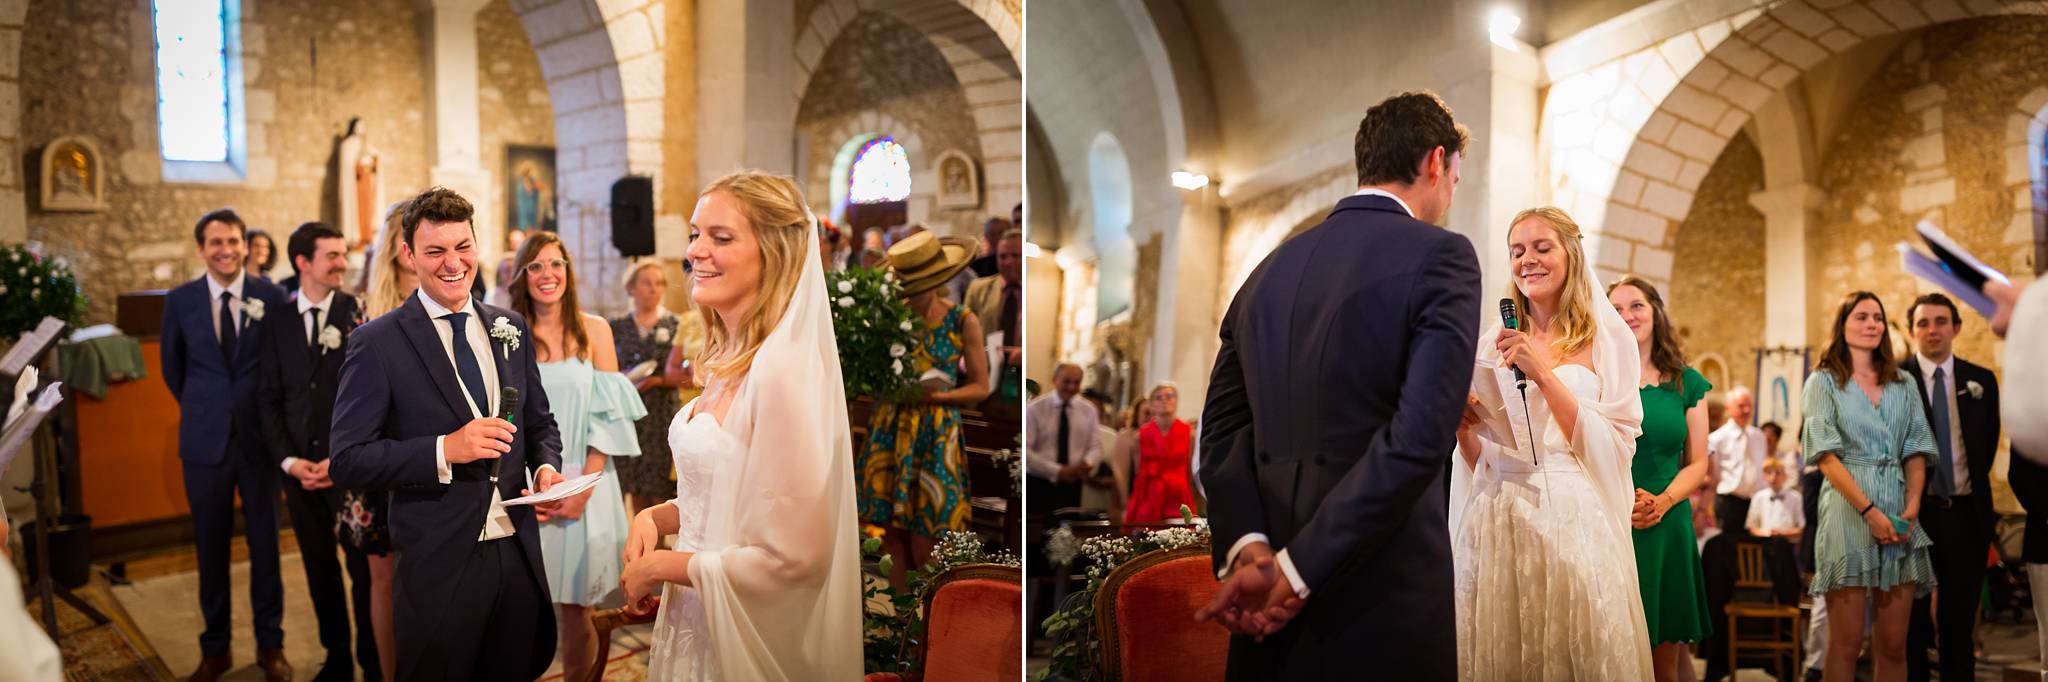 Reportage photos du mariage civil et religieux de Domitille et Maxime à Jaure en Dordogne. Un mariage dans le jardin, à la maison.